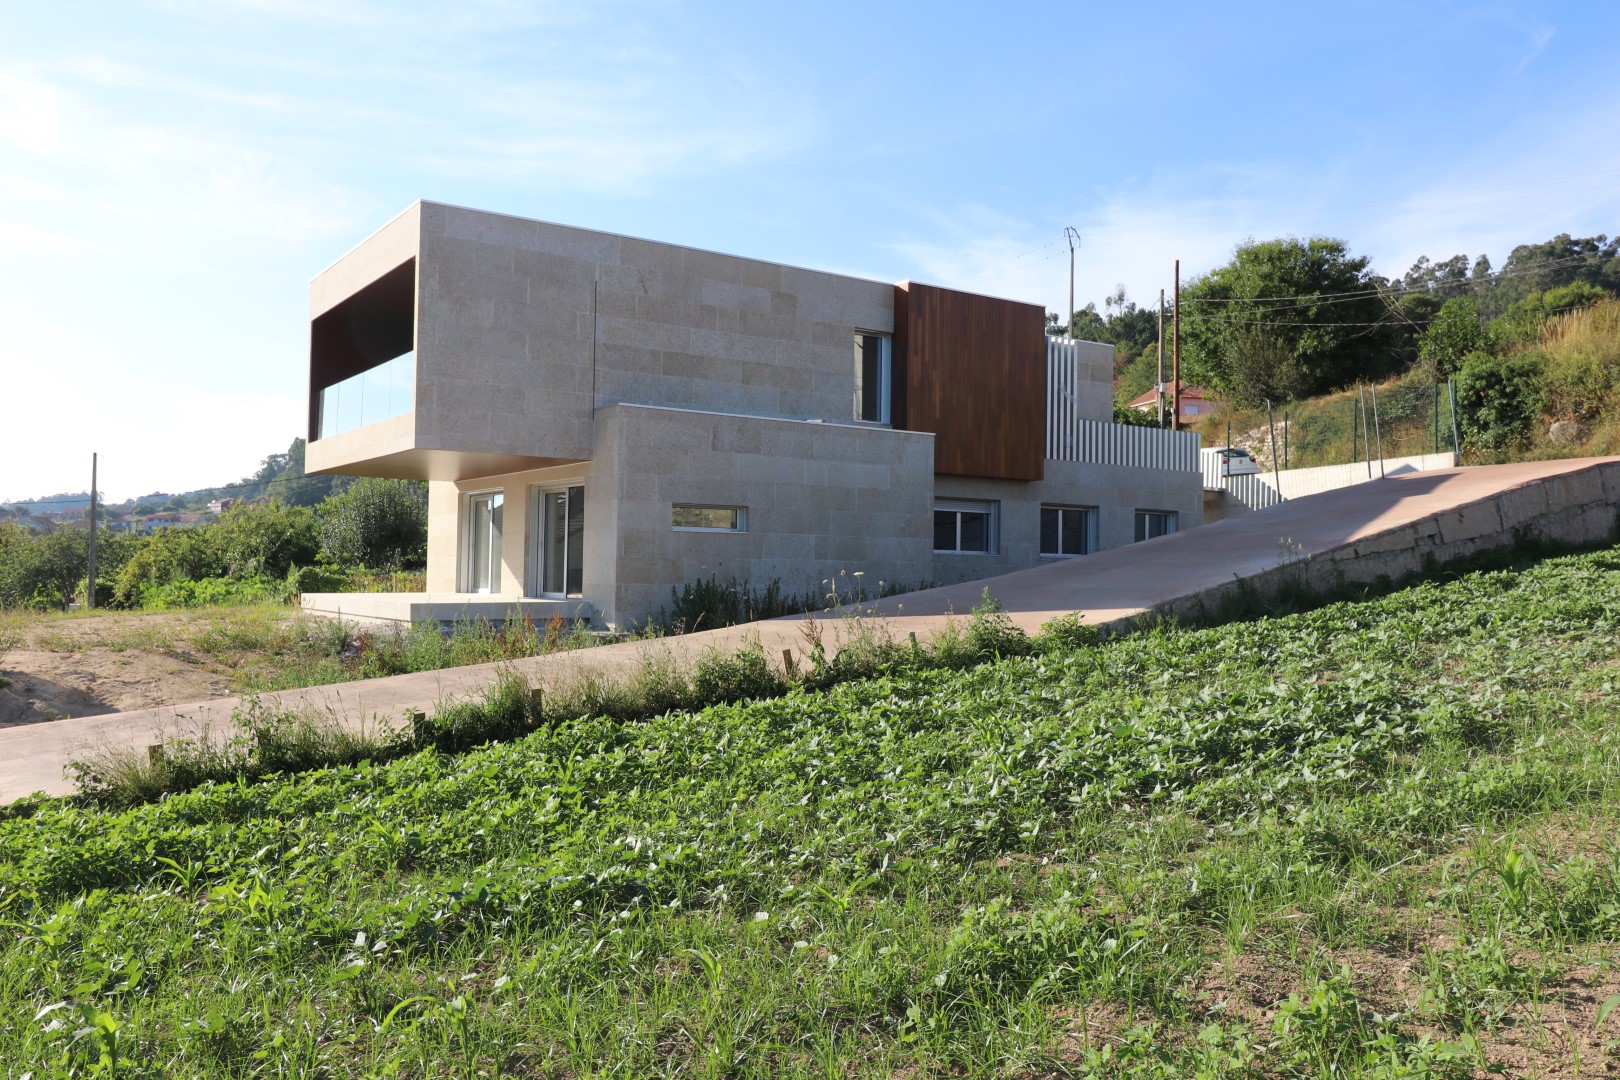 Vivienda Unifamiliar en Vigo diseñada por nam arquitectos. Estudio de arquitectura. Proyecto vivienda.